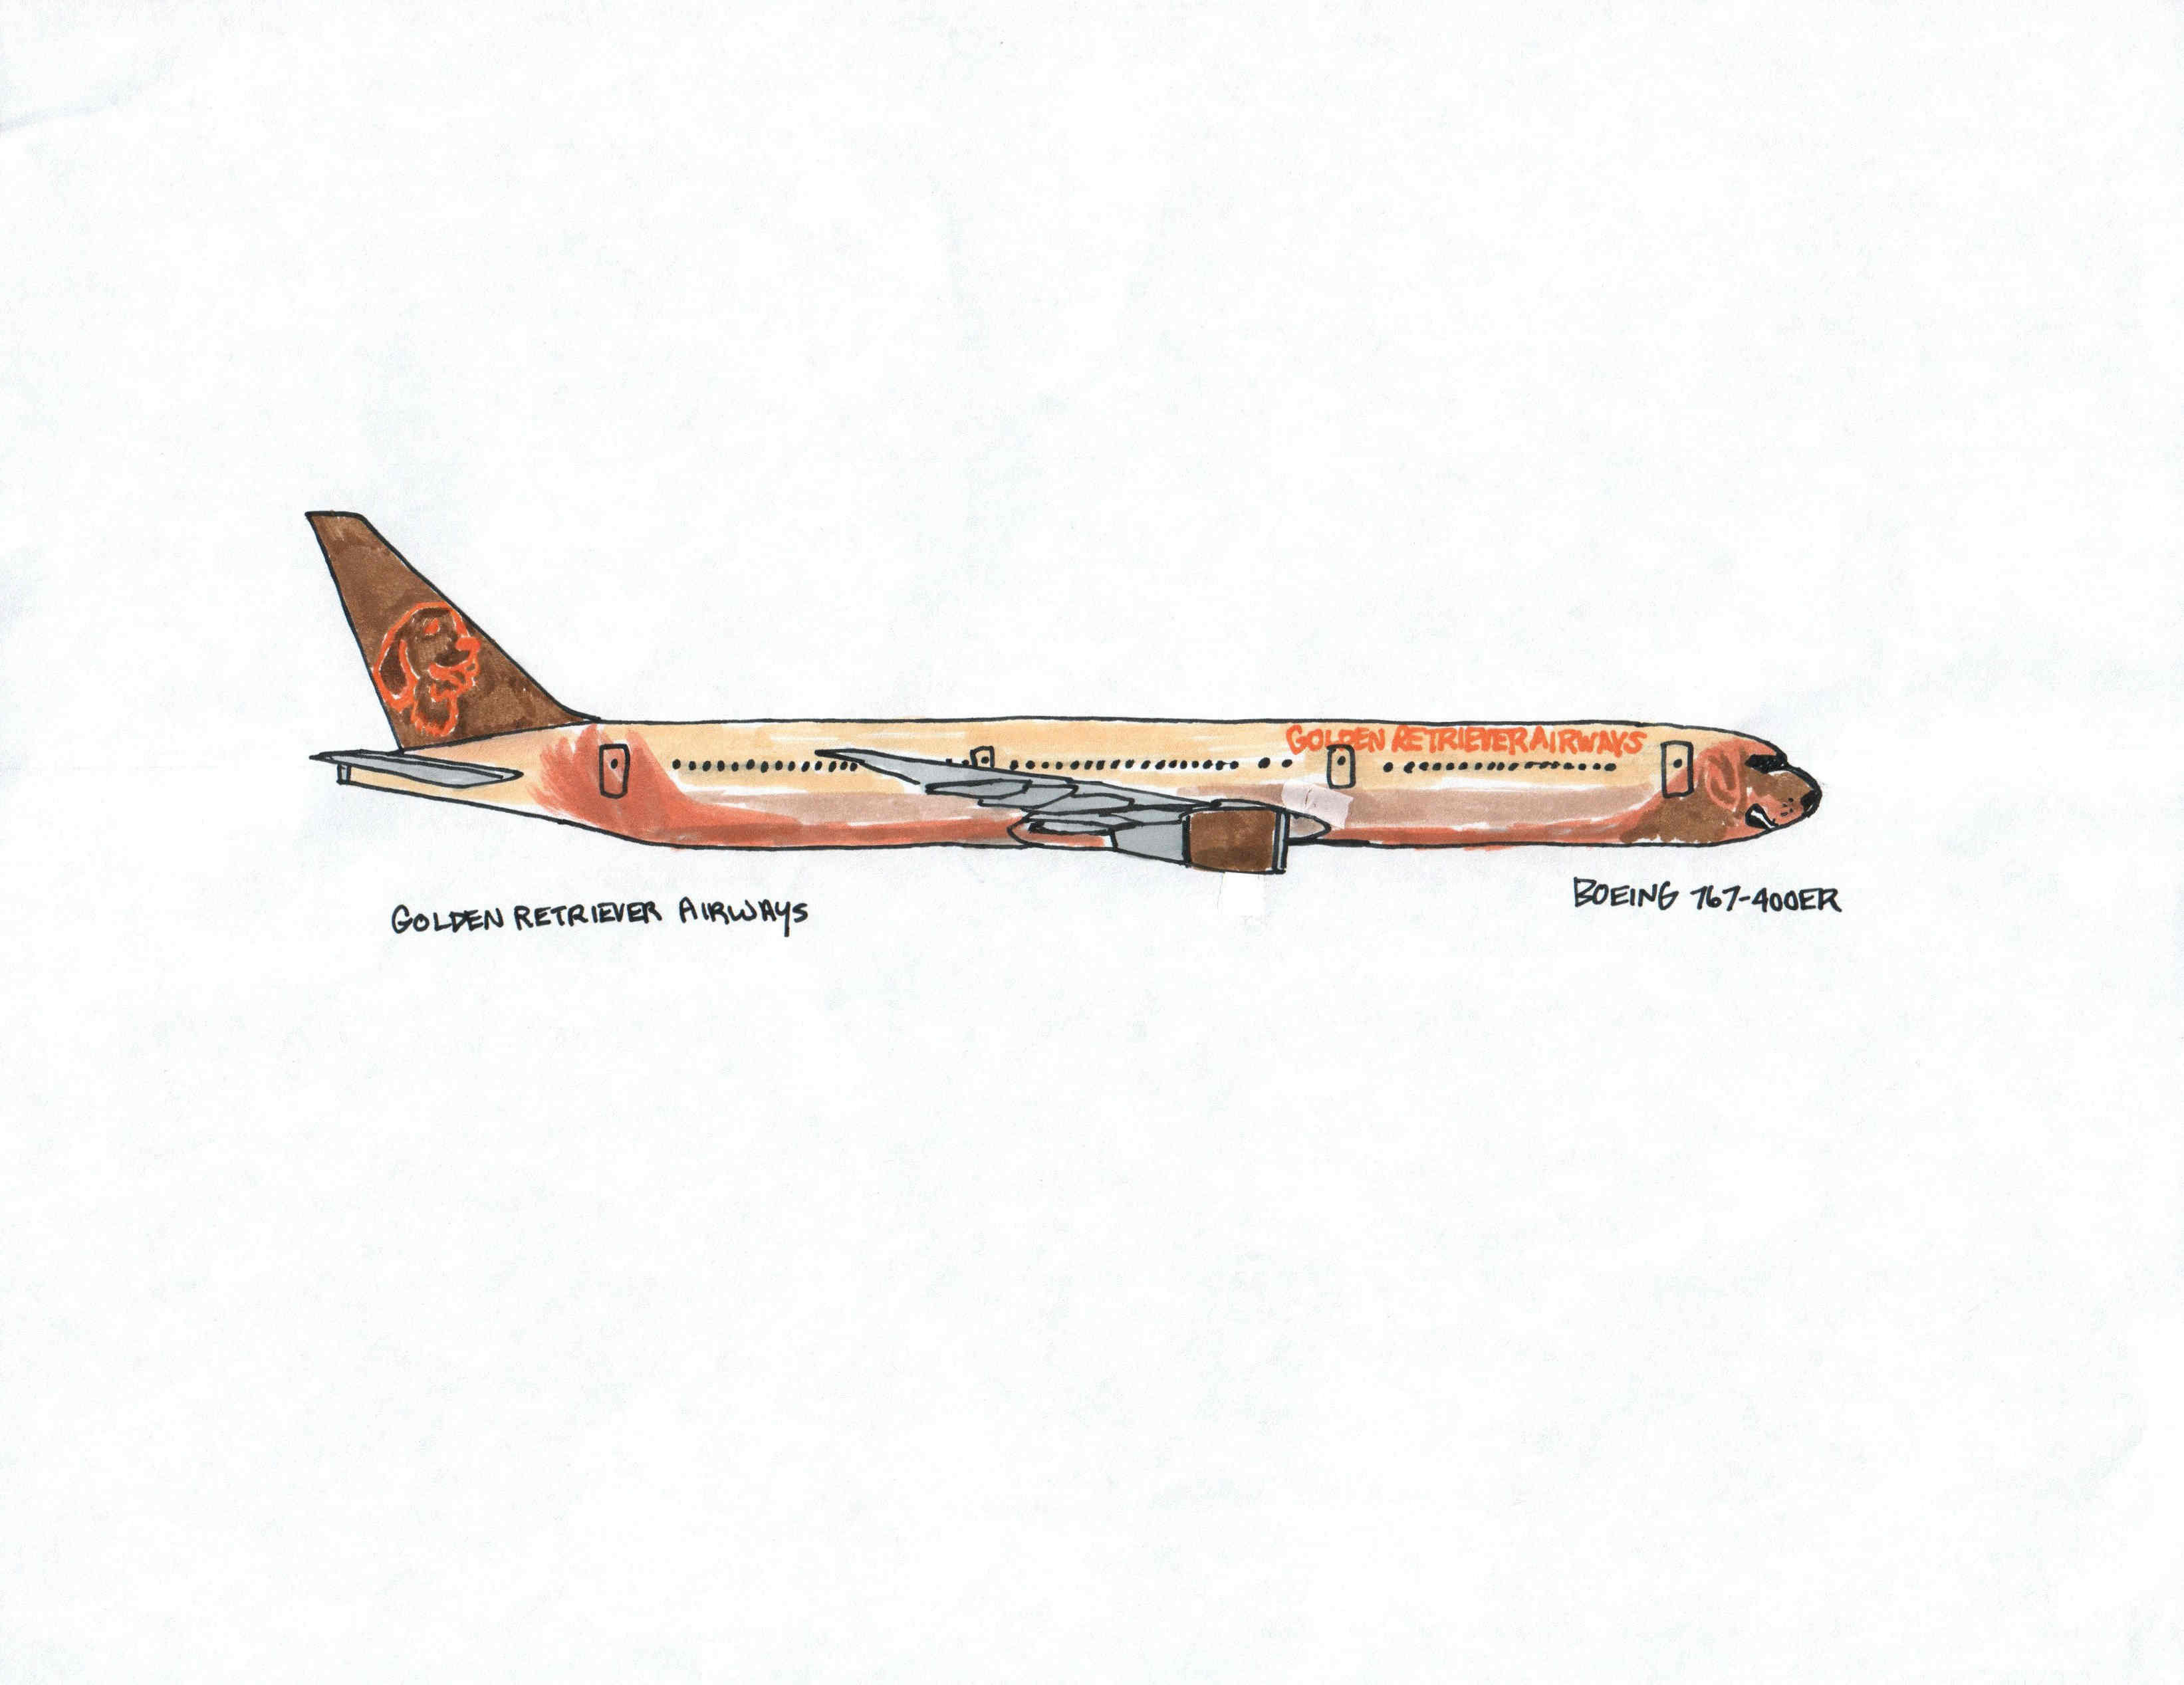 Golden Retriever Airways | Boeing 767-400ER